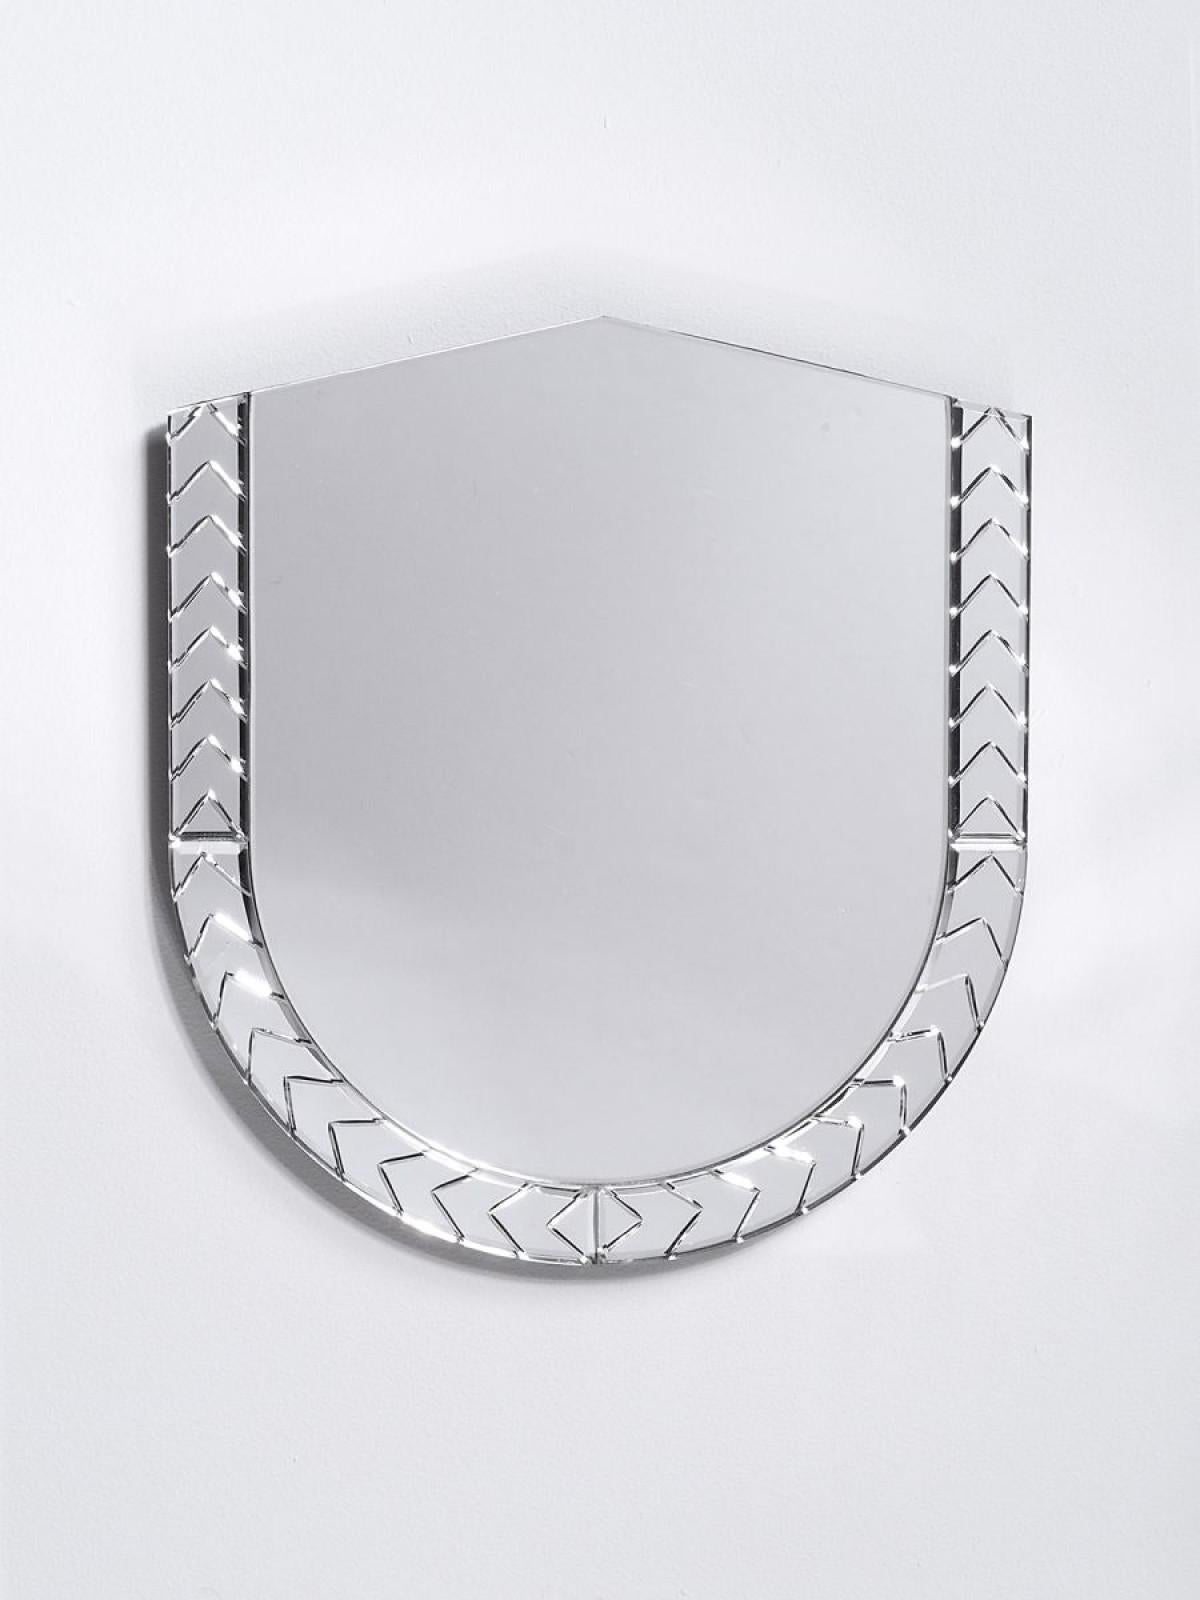 Grand miroir Scena Elemento Due Murano par Nikolai Kotlarczyk
Dimensions : D 3 x L 65 x H 60 cm 
MATERIAL : verre taillé argenté, dos en bois gris foncé. 
Également disponible dans d'autres designs et dimensions.


Elemento est une série de miroirs